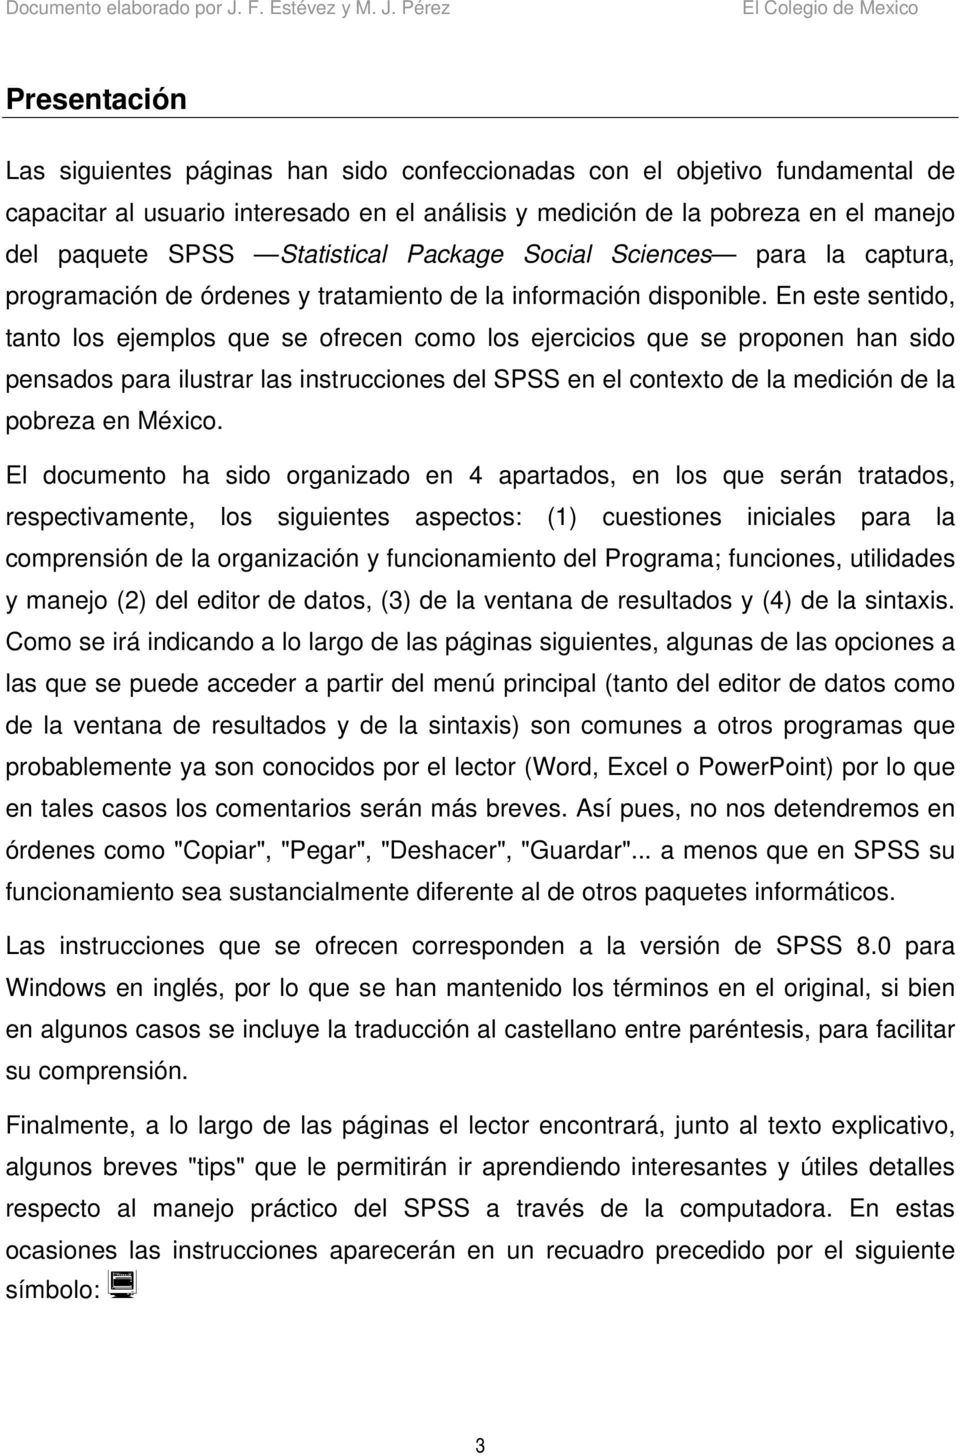 En este sentido, tanto los ejemplos que se ofrecen como los ejercicios que se proponen han sido pensados para ilustrar las instrucciones del SPSS en el contexto de la medición de la pobreza en México.